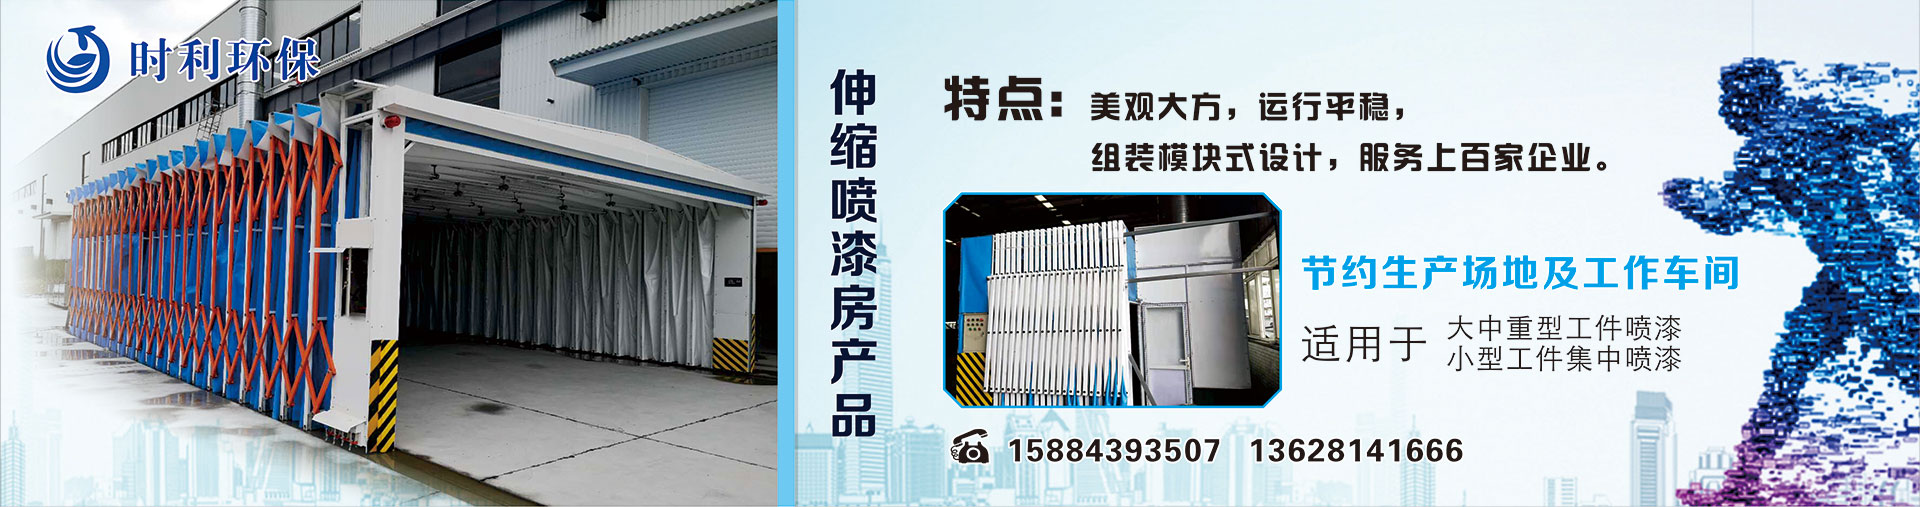 河北沧州华虹科技开发有限公司塑胶地板